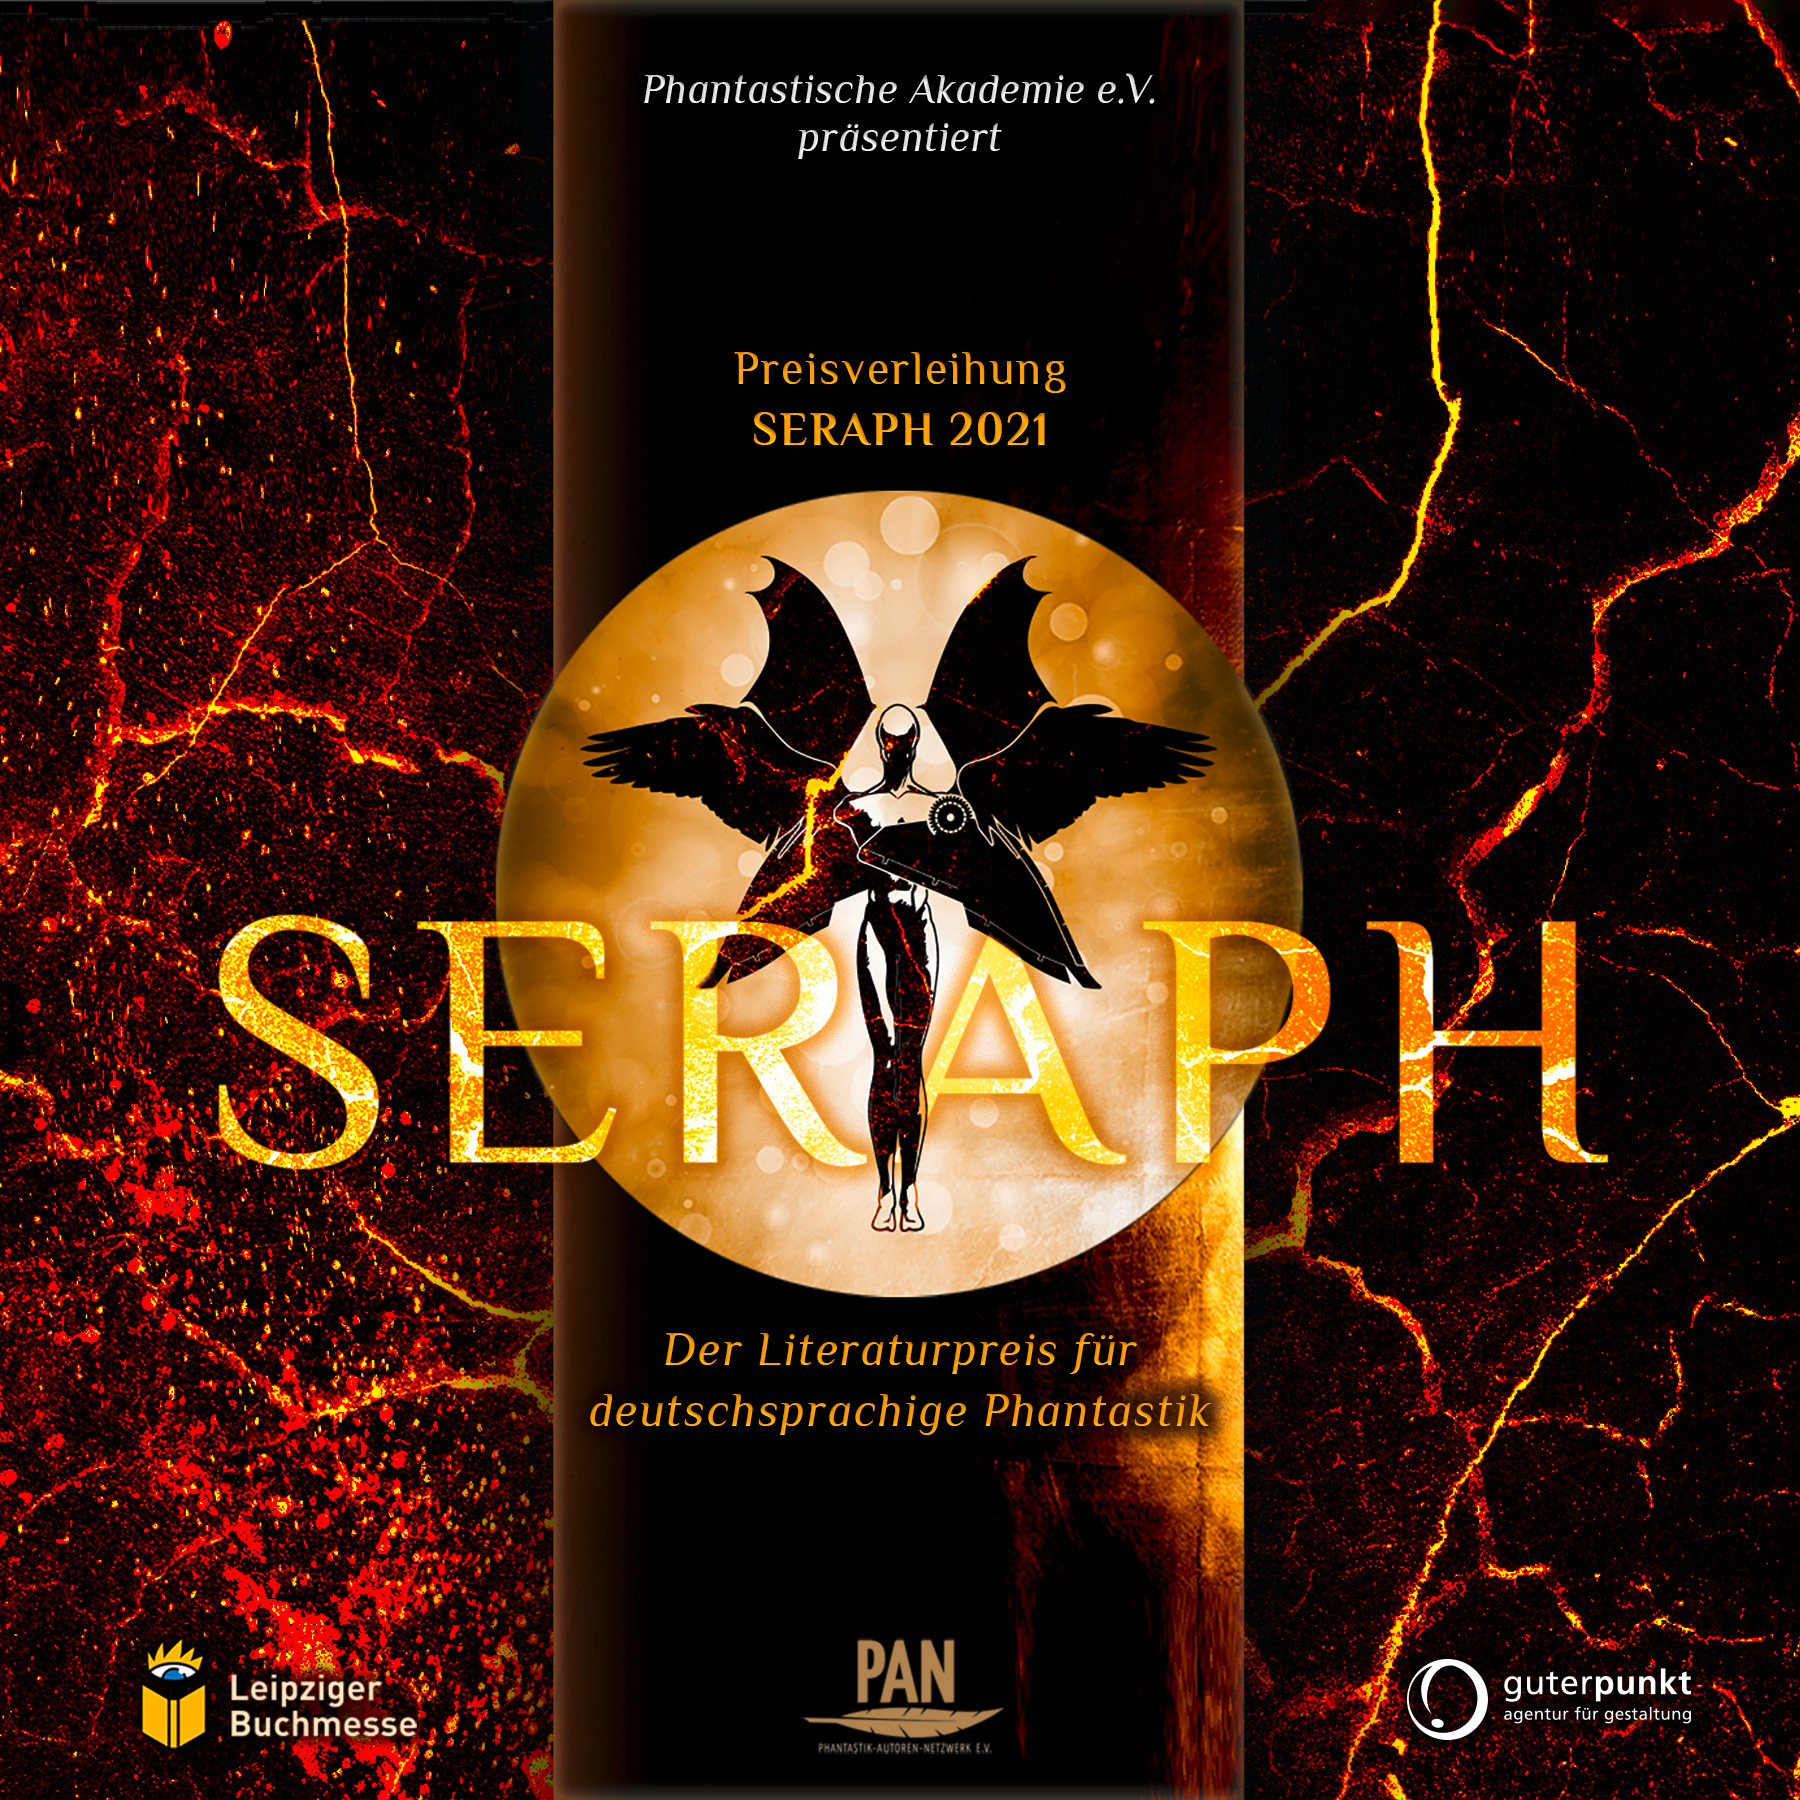 SERAPH 2021 – Literaturpreis der deutschsprachigen Phantastik